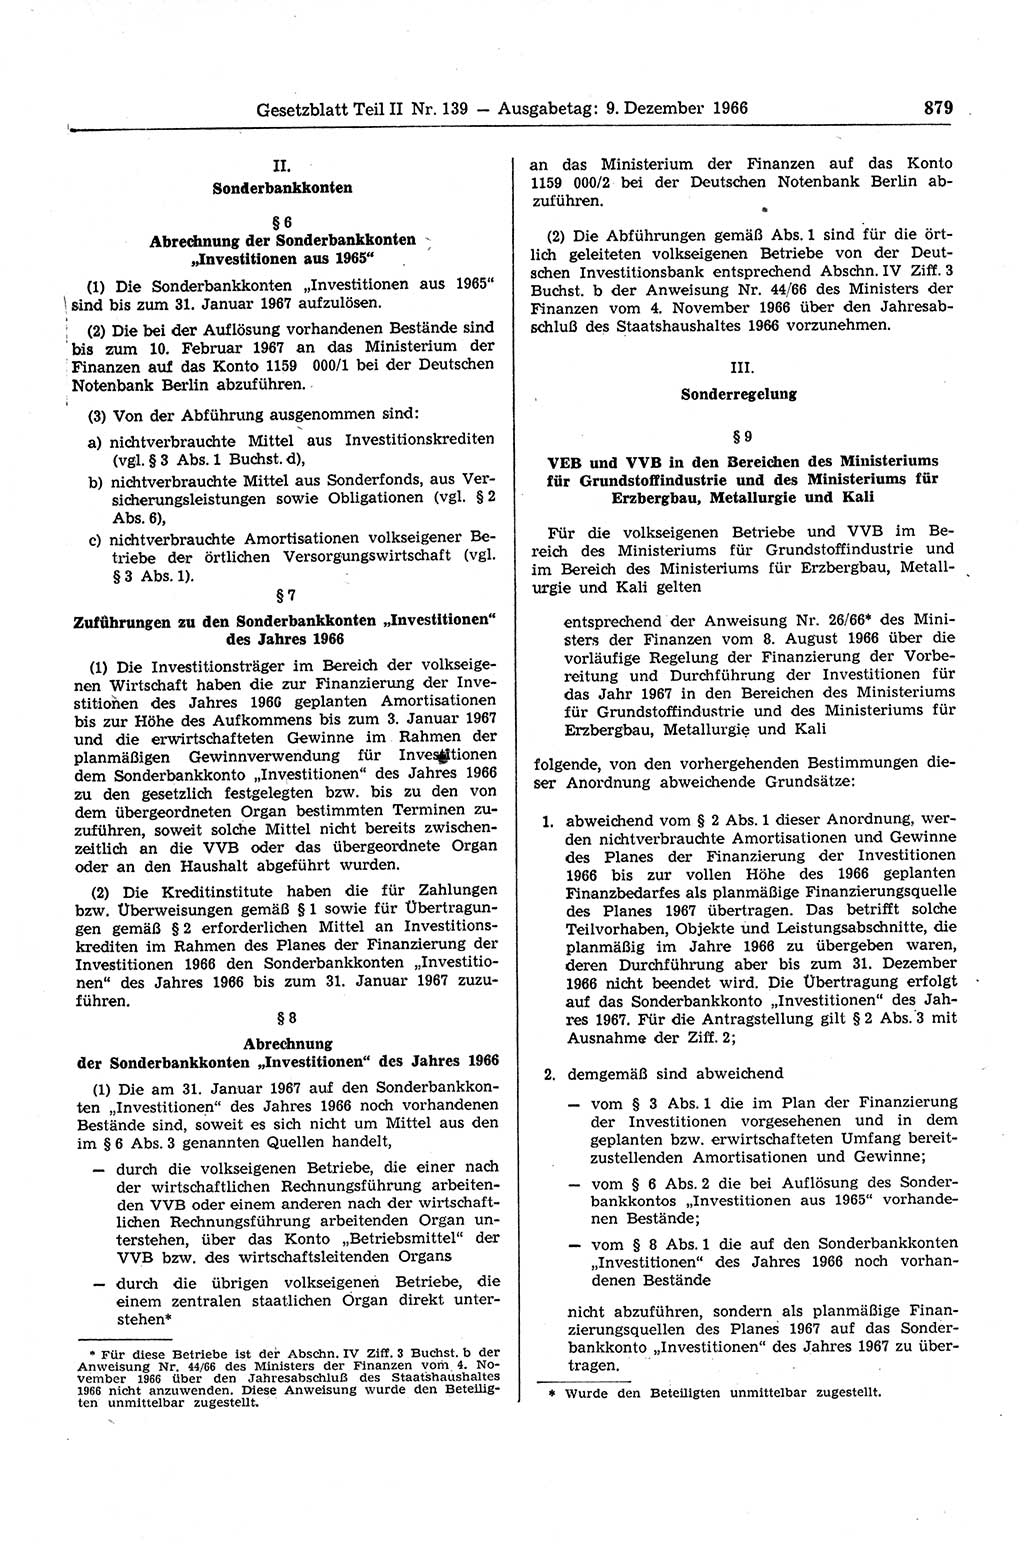 Gesetzblatt (GBl.) der Deutschen Demokratischen Republik (DDR) Teil ⅠⅠ 1966, Seite 879 (GBl. DDR ⅠⅠ 1966, S. 879)